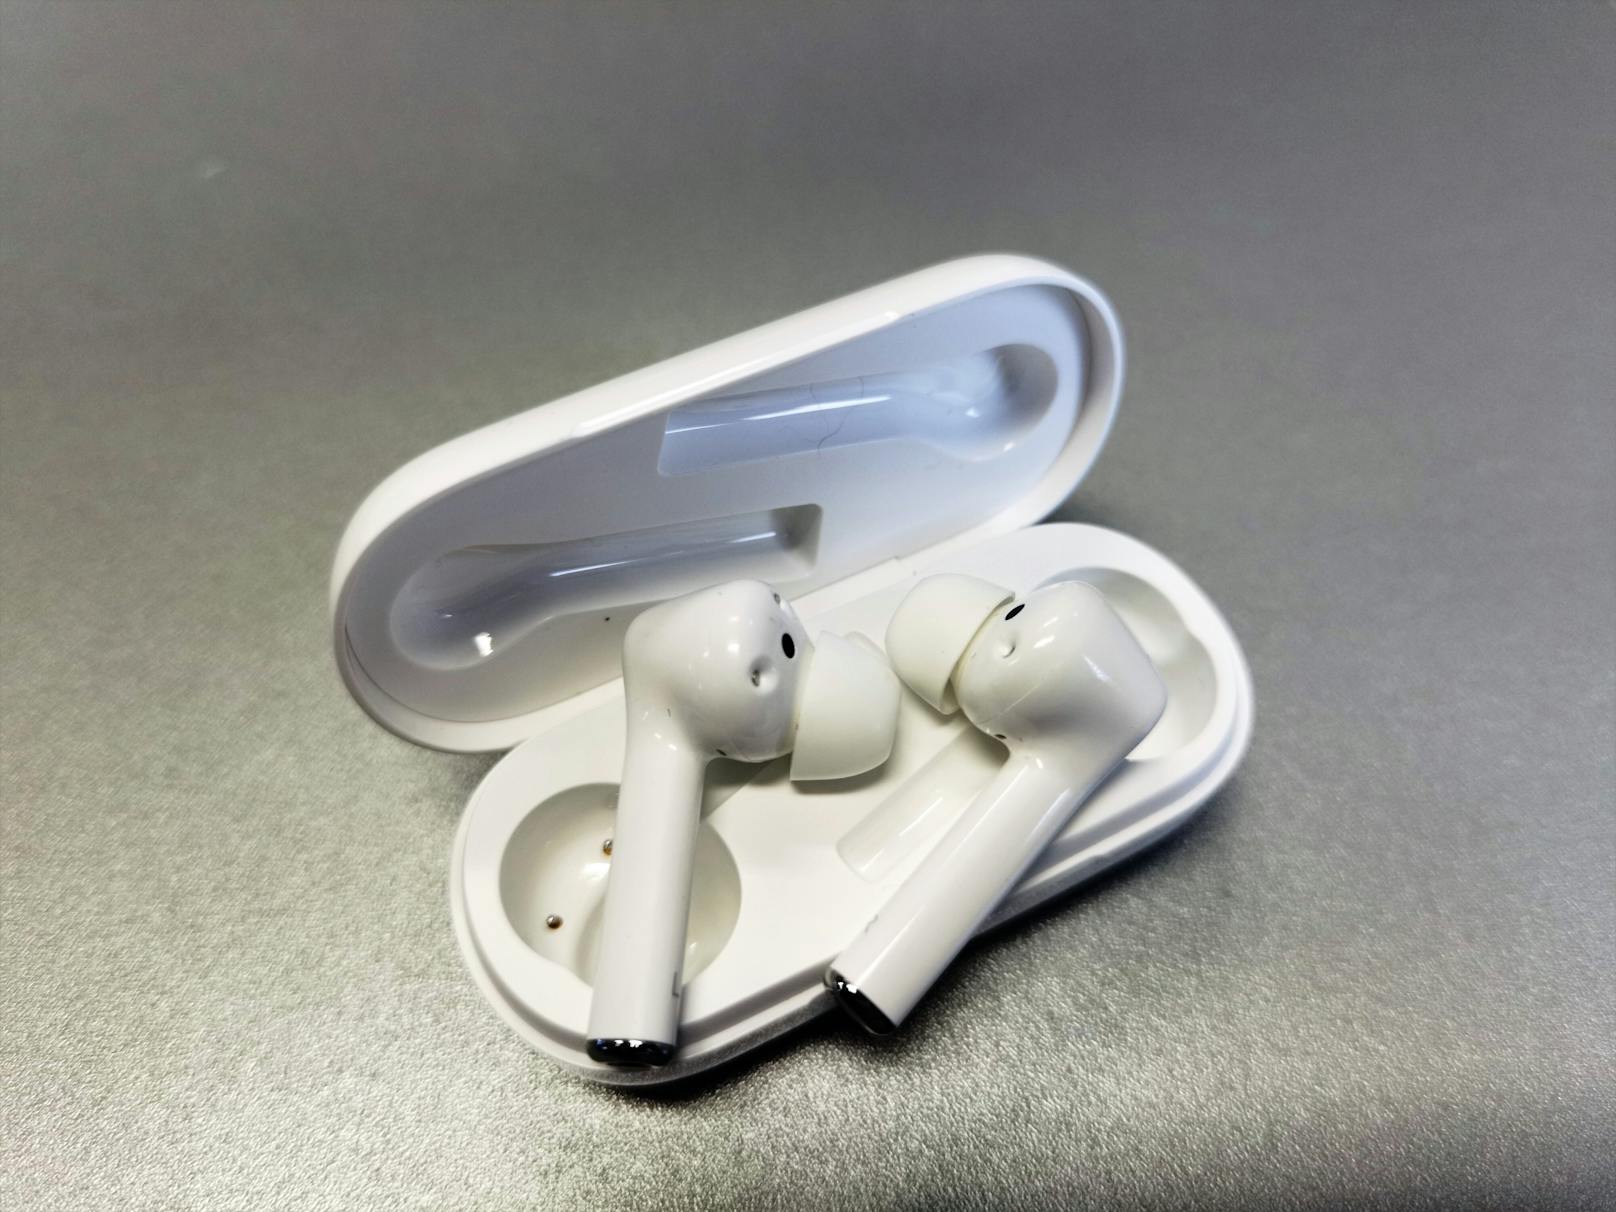 Weit übertrumpfen können die FreeBuds 3i die Vorgänger wiederum beim Tragekomfort. Durch die Silikon-Aufsätze halten die Bluetooth-Kopfhörer sehr sicher und fest im Ohr.